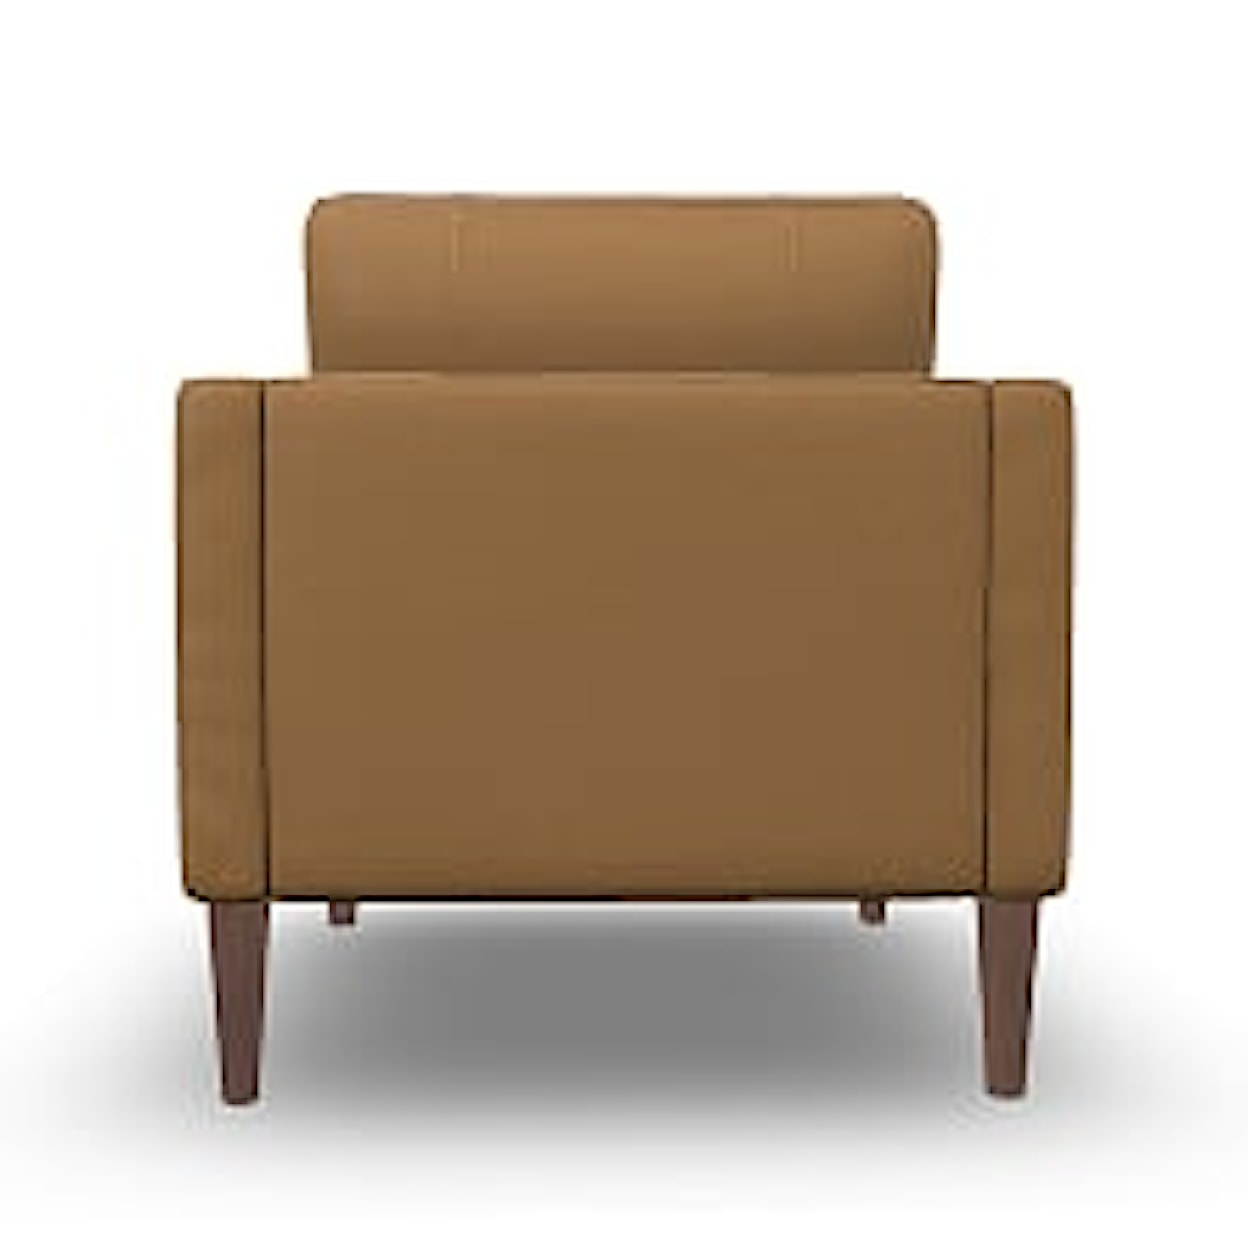 Bravo Furniture Trafton Chair